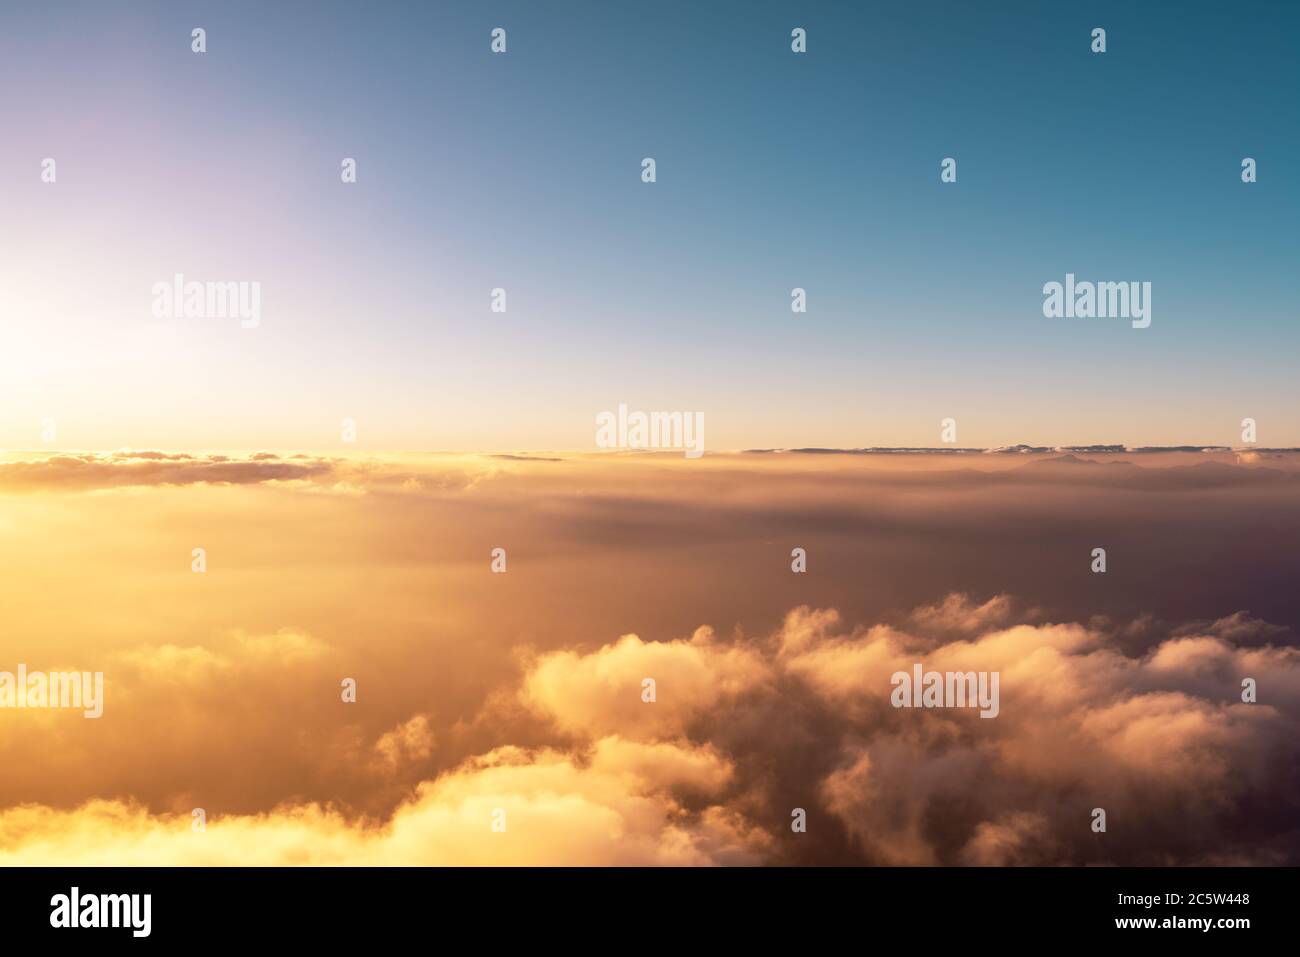 Ein Panorama-Draufsicht auf Sonnenaufgang oder Sonnenuntergang und über alle Wolken unter dem blauen Himmel, Himmel und Wolken Banner, Tapete Konzept. Hochwertige Fotos Stockfoto